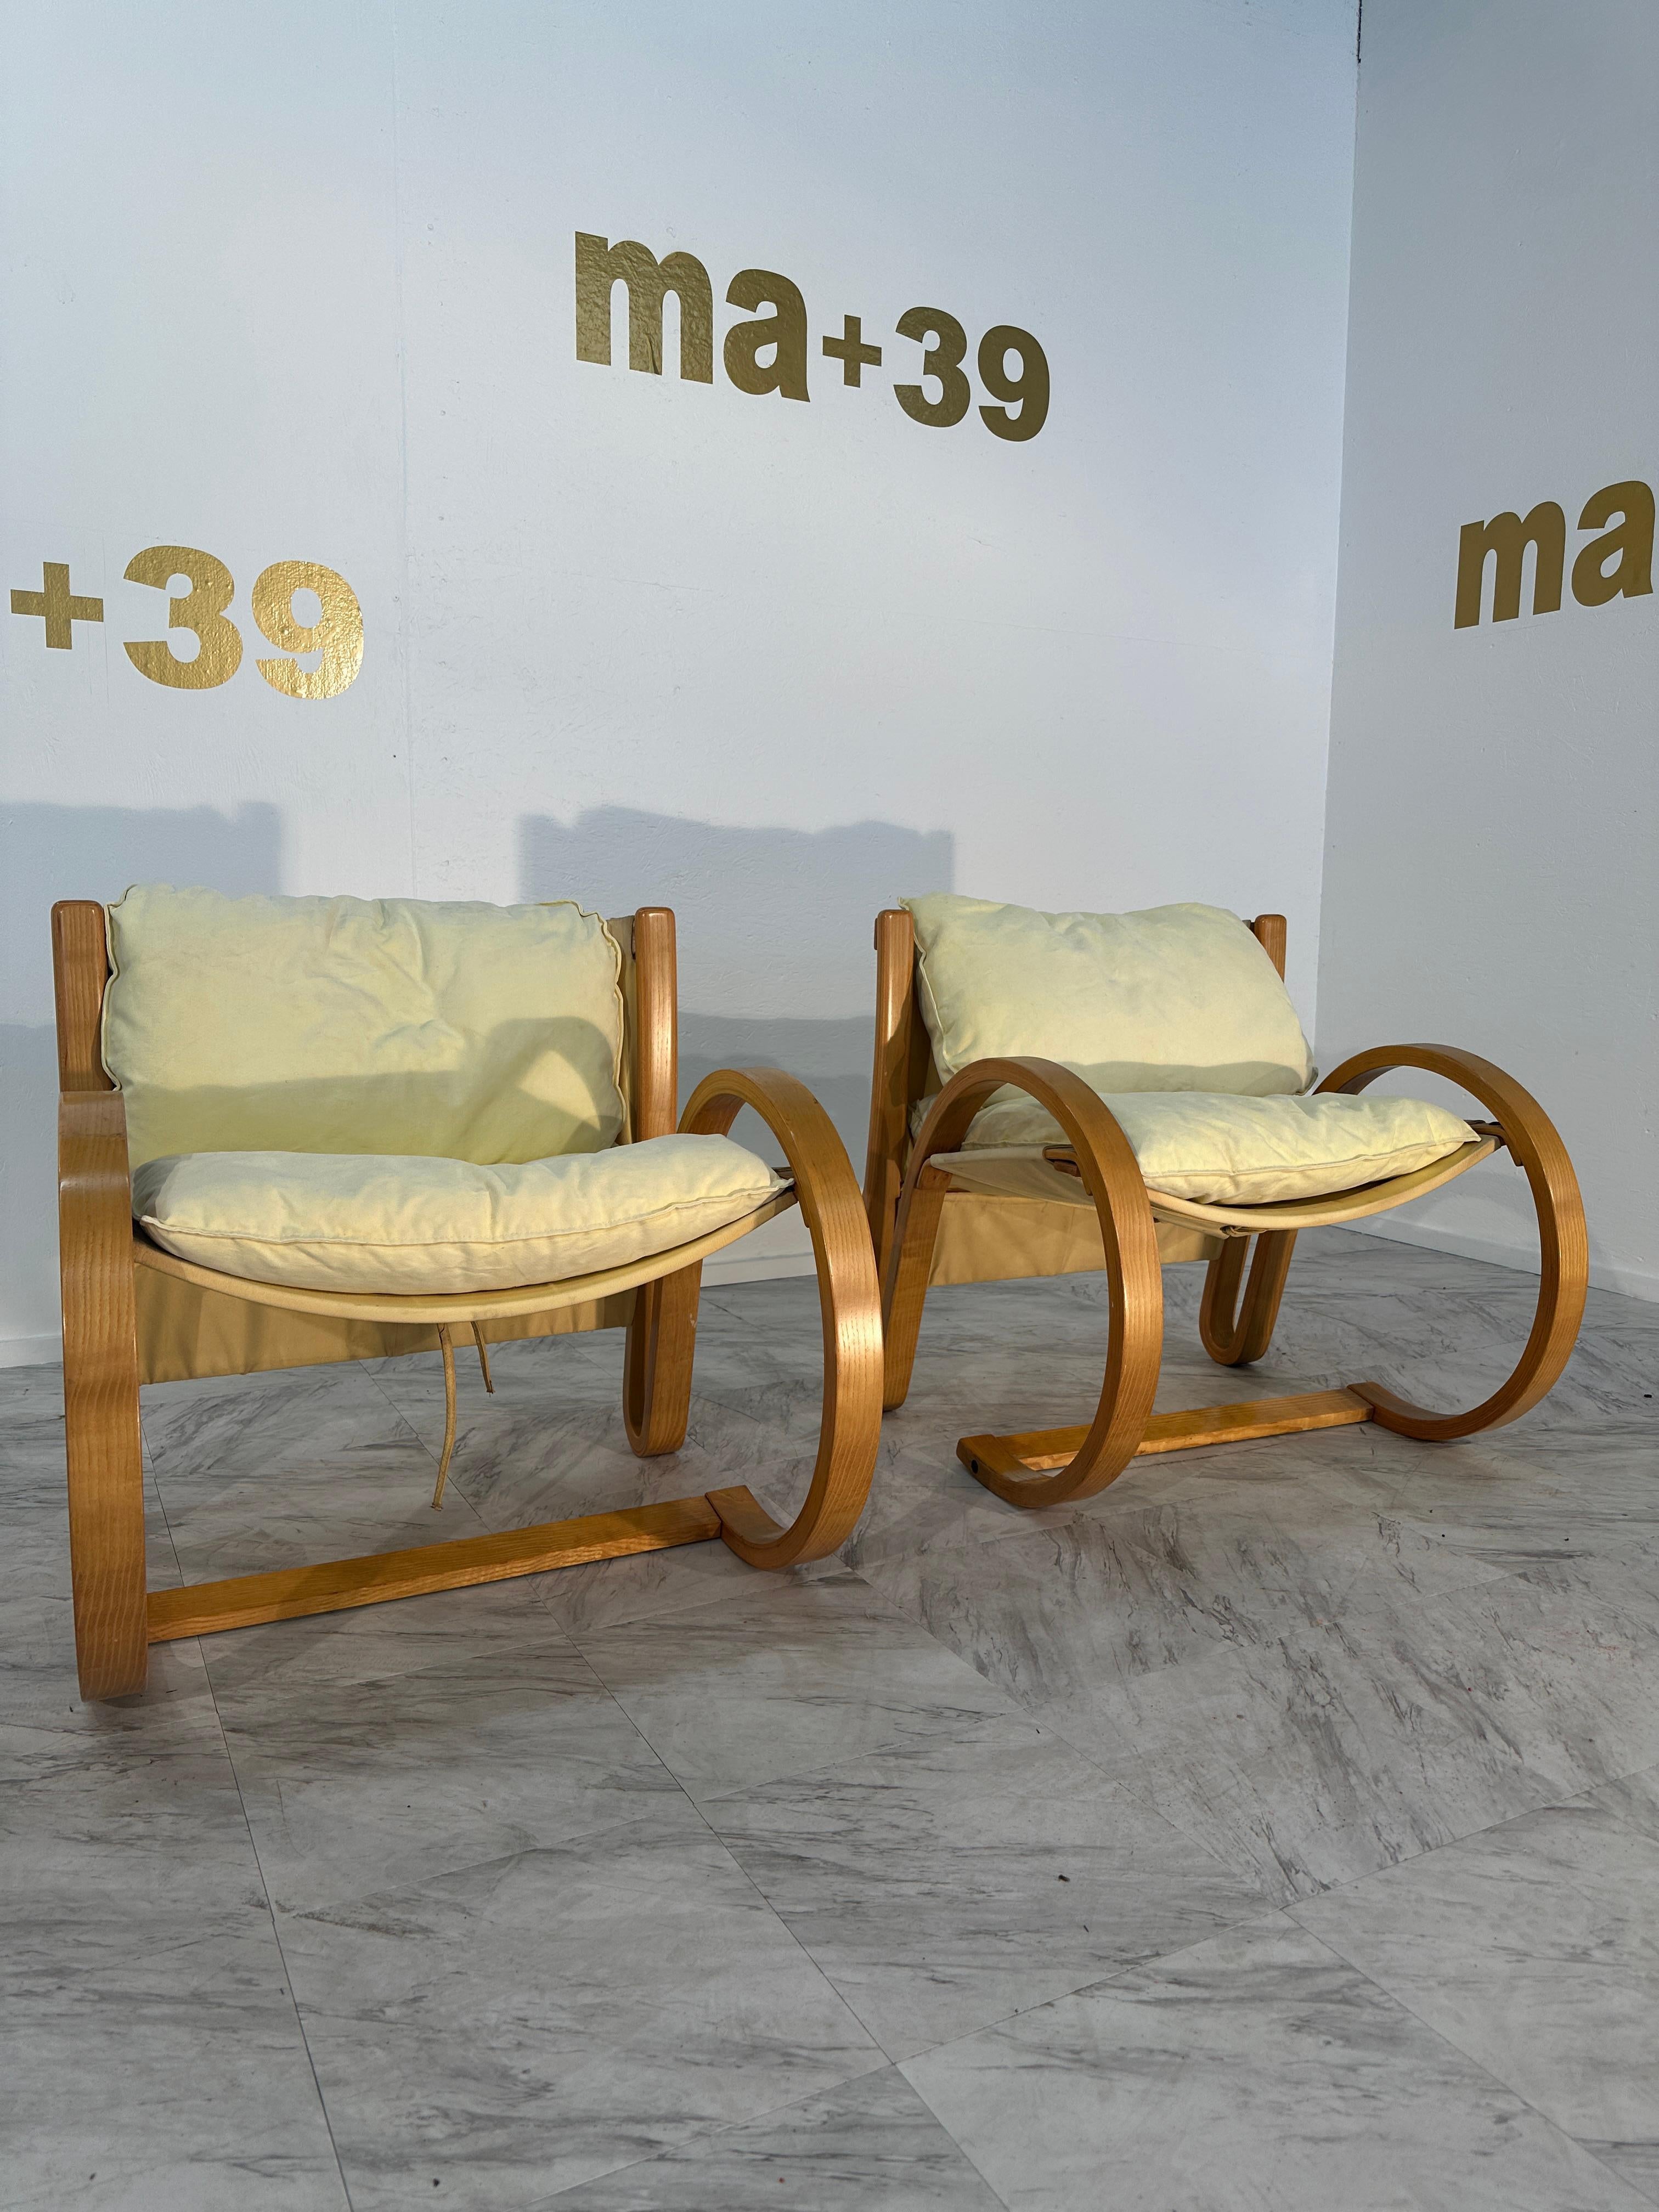 Certainement ! La paire de 2 chaises longues italiennes Alvar Aalto du milieu du siècle dernier, datant des années 1980, est délicieusement fabriquée avec une base en bois incurvée faite à la main, reflétant l'esthétique emblématique du design du